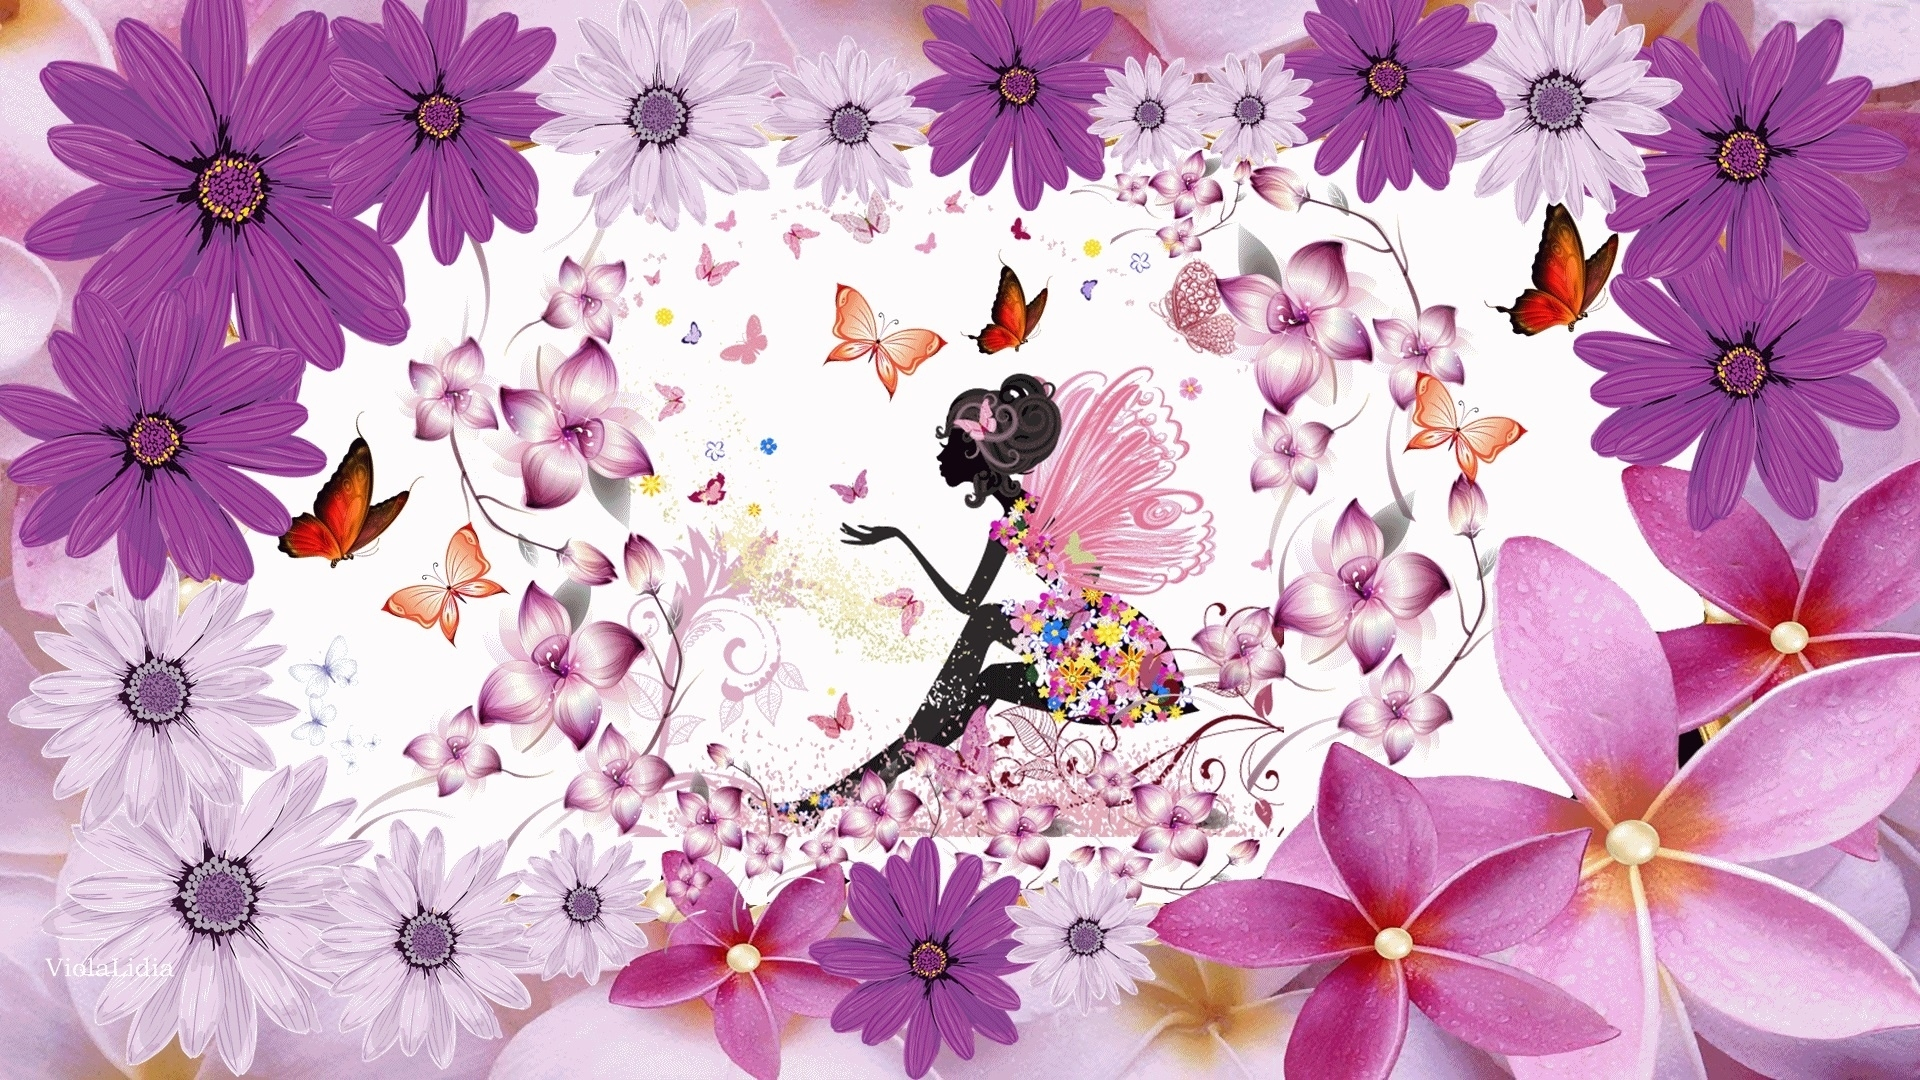 Скачать обои бесплатно Цветок, Бабочка, Красочный, Художественный, Женщины картинка на рабочий стол ПК